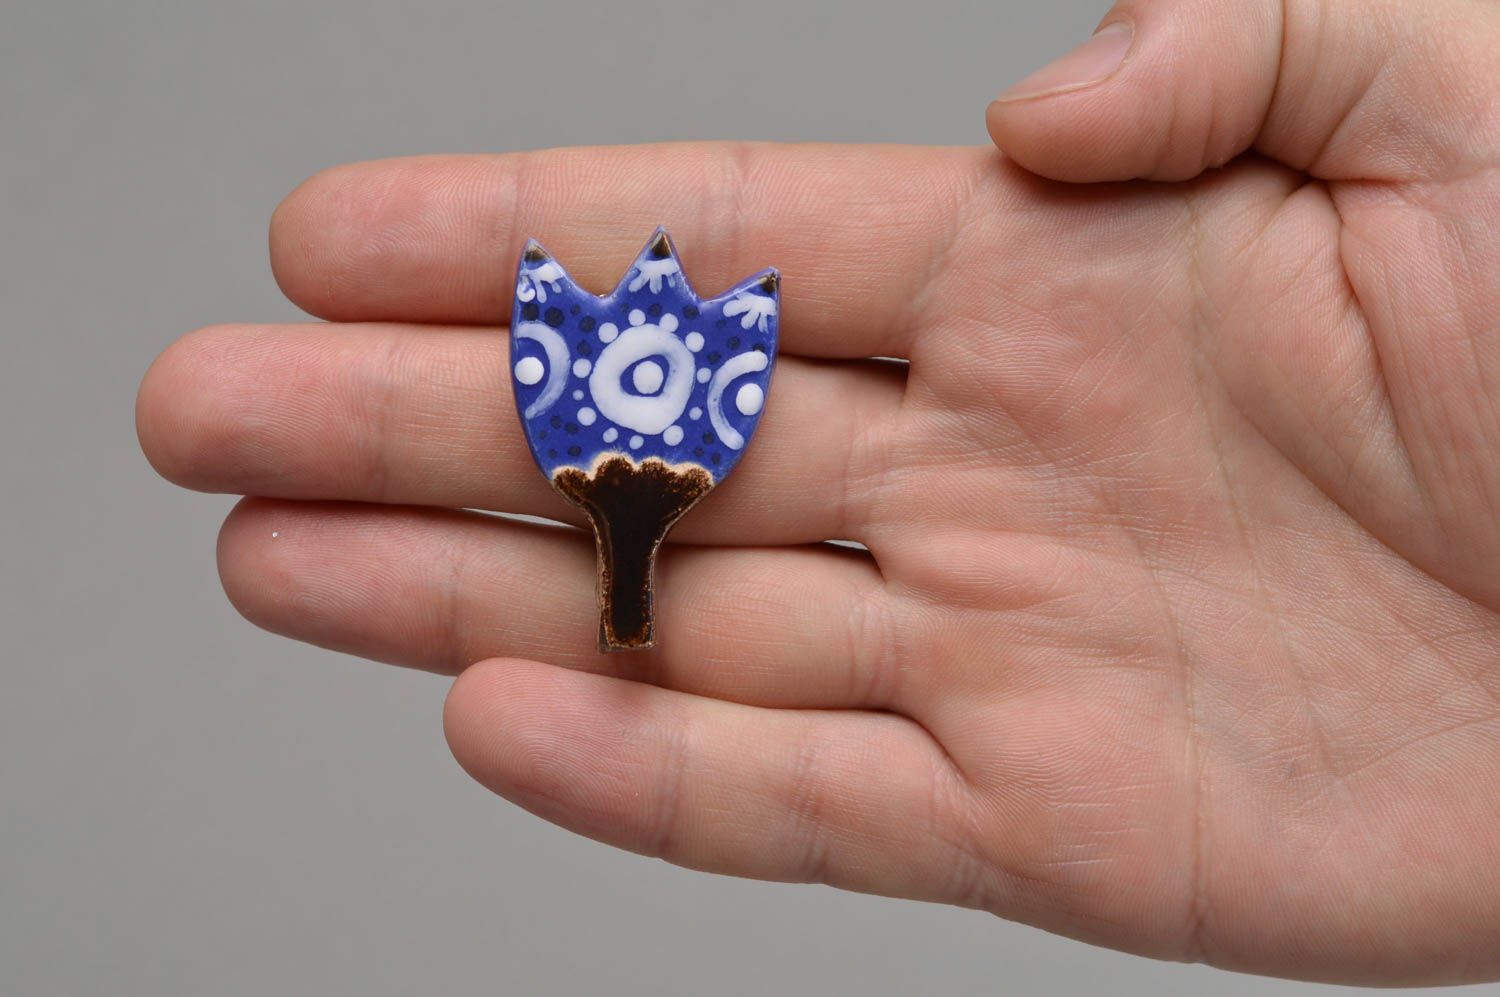 Глиняная брошь ручной работы в виде тюльпана в орнаментом в голубых тонах фото 4